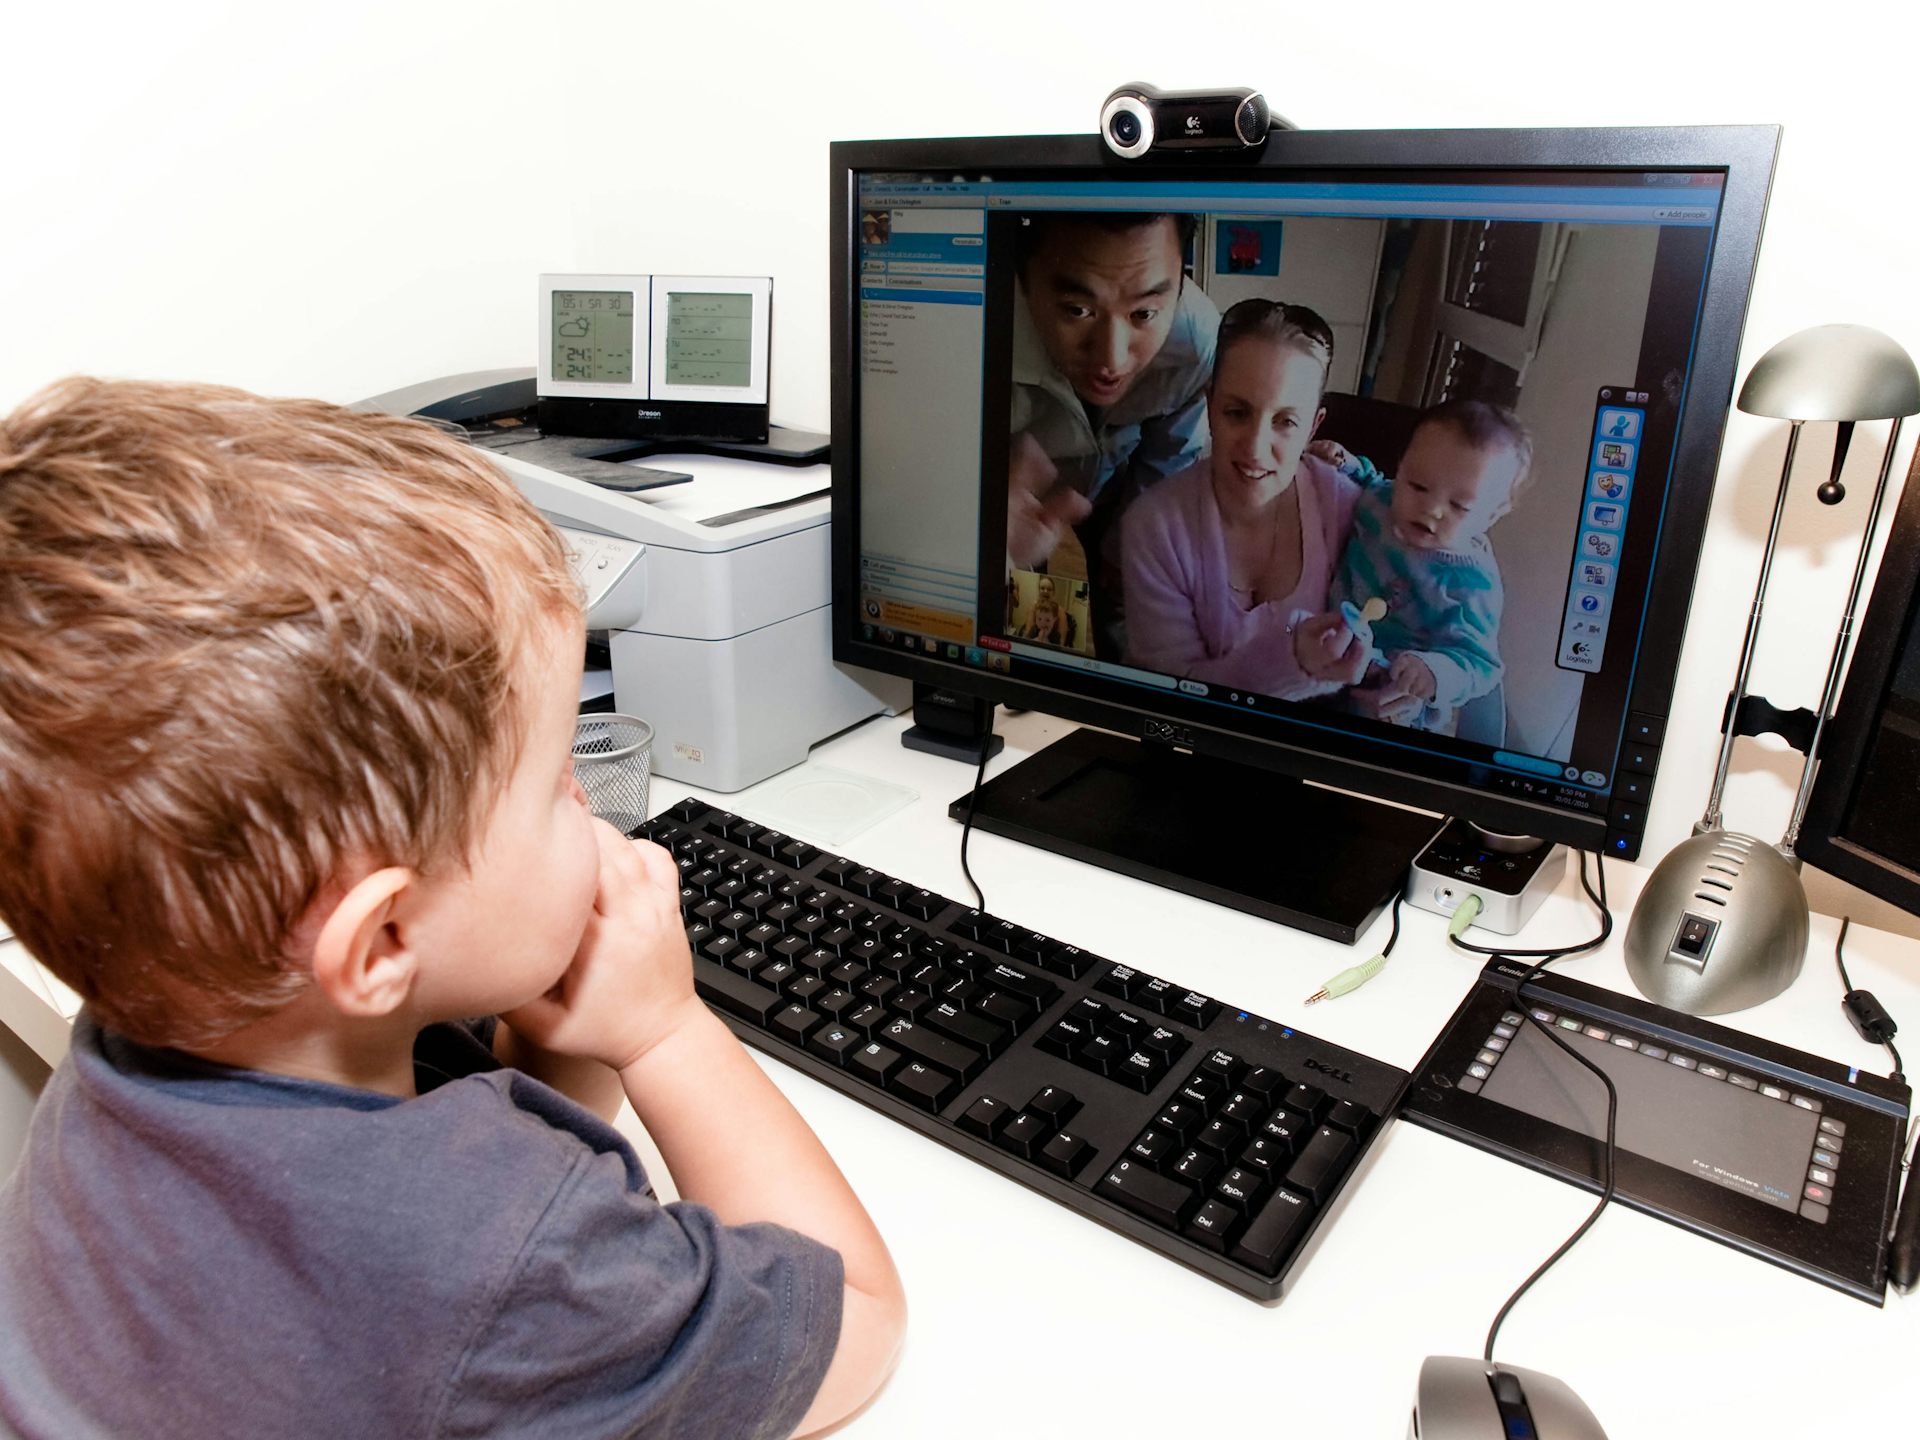 Случайное общение по камере. Компьютер для детей. Ребенок за компьютером. Общение с компьютером. Компьютер картинка для детей.